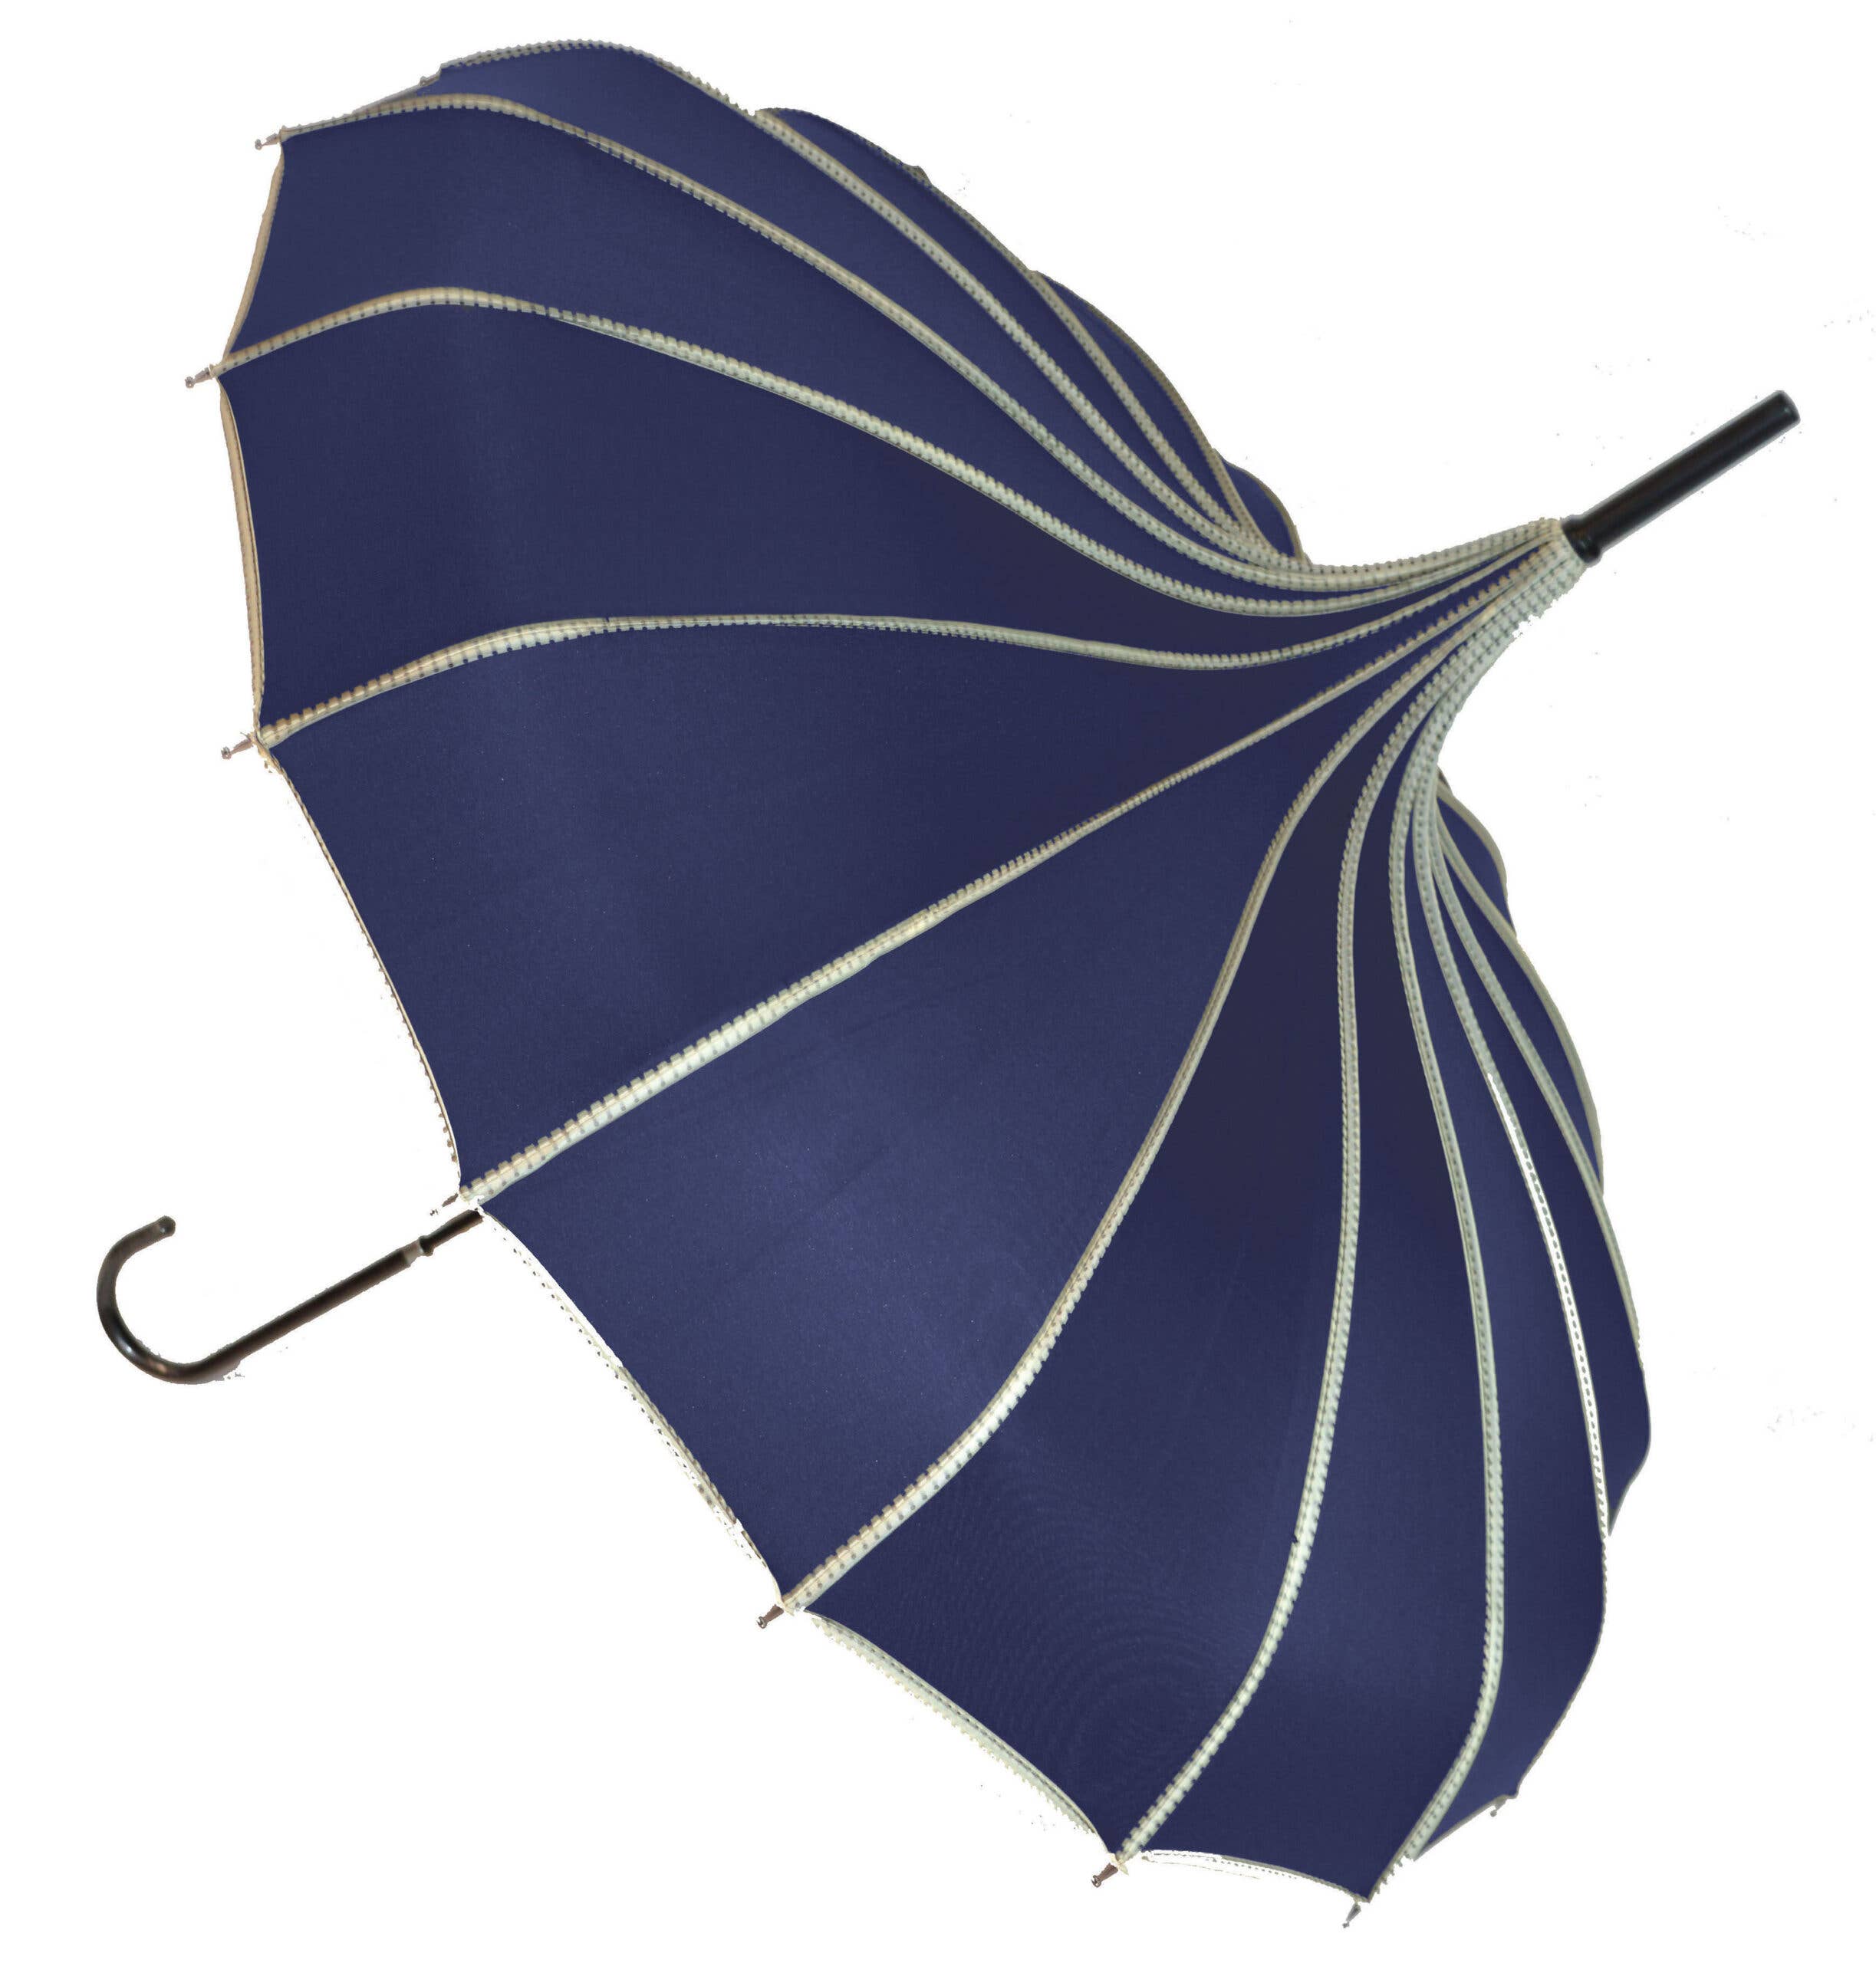 Ribbed Pagoda Navy Blue Umbrella